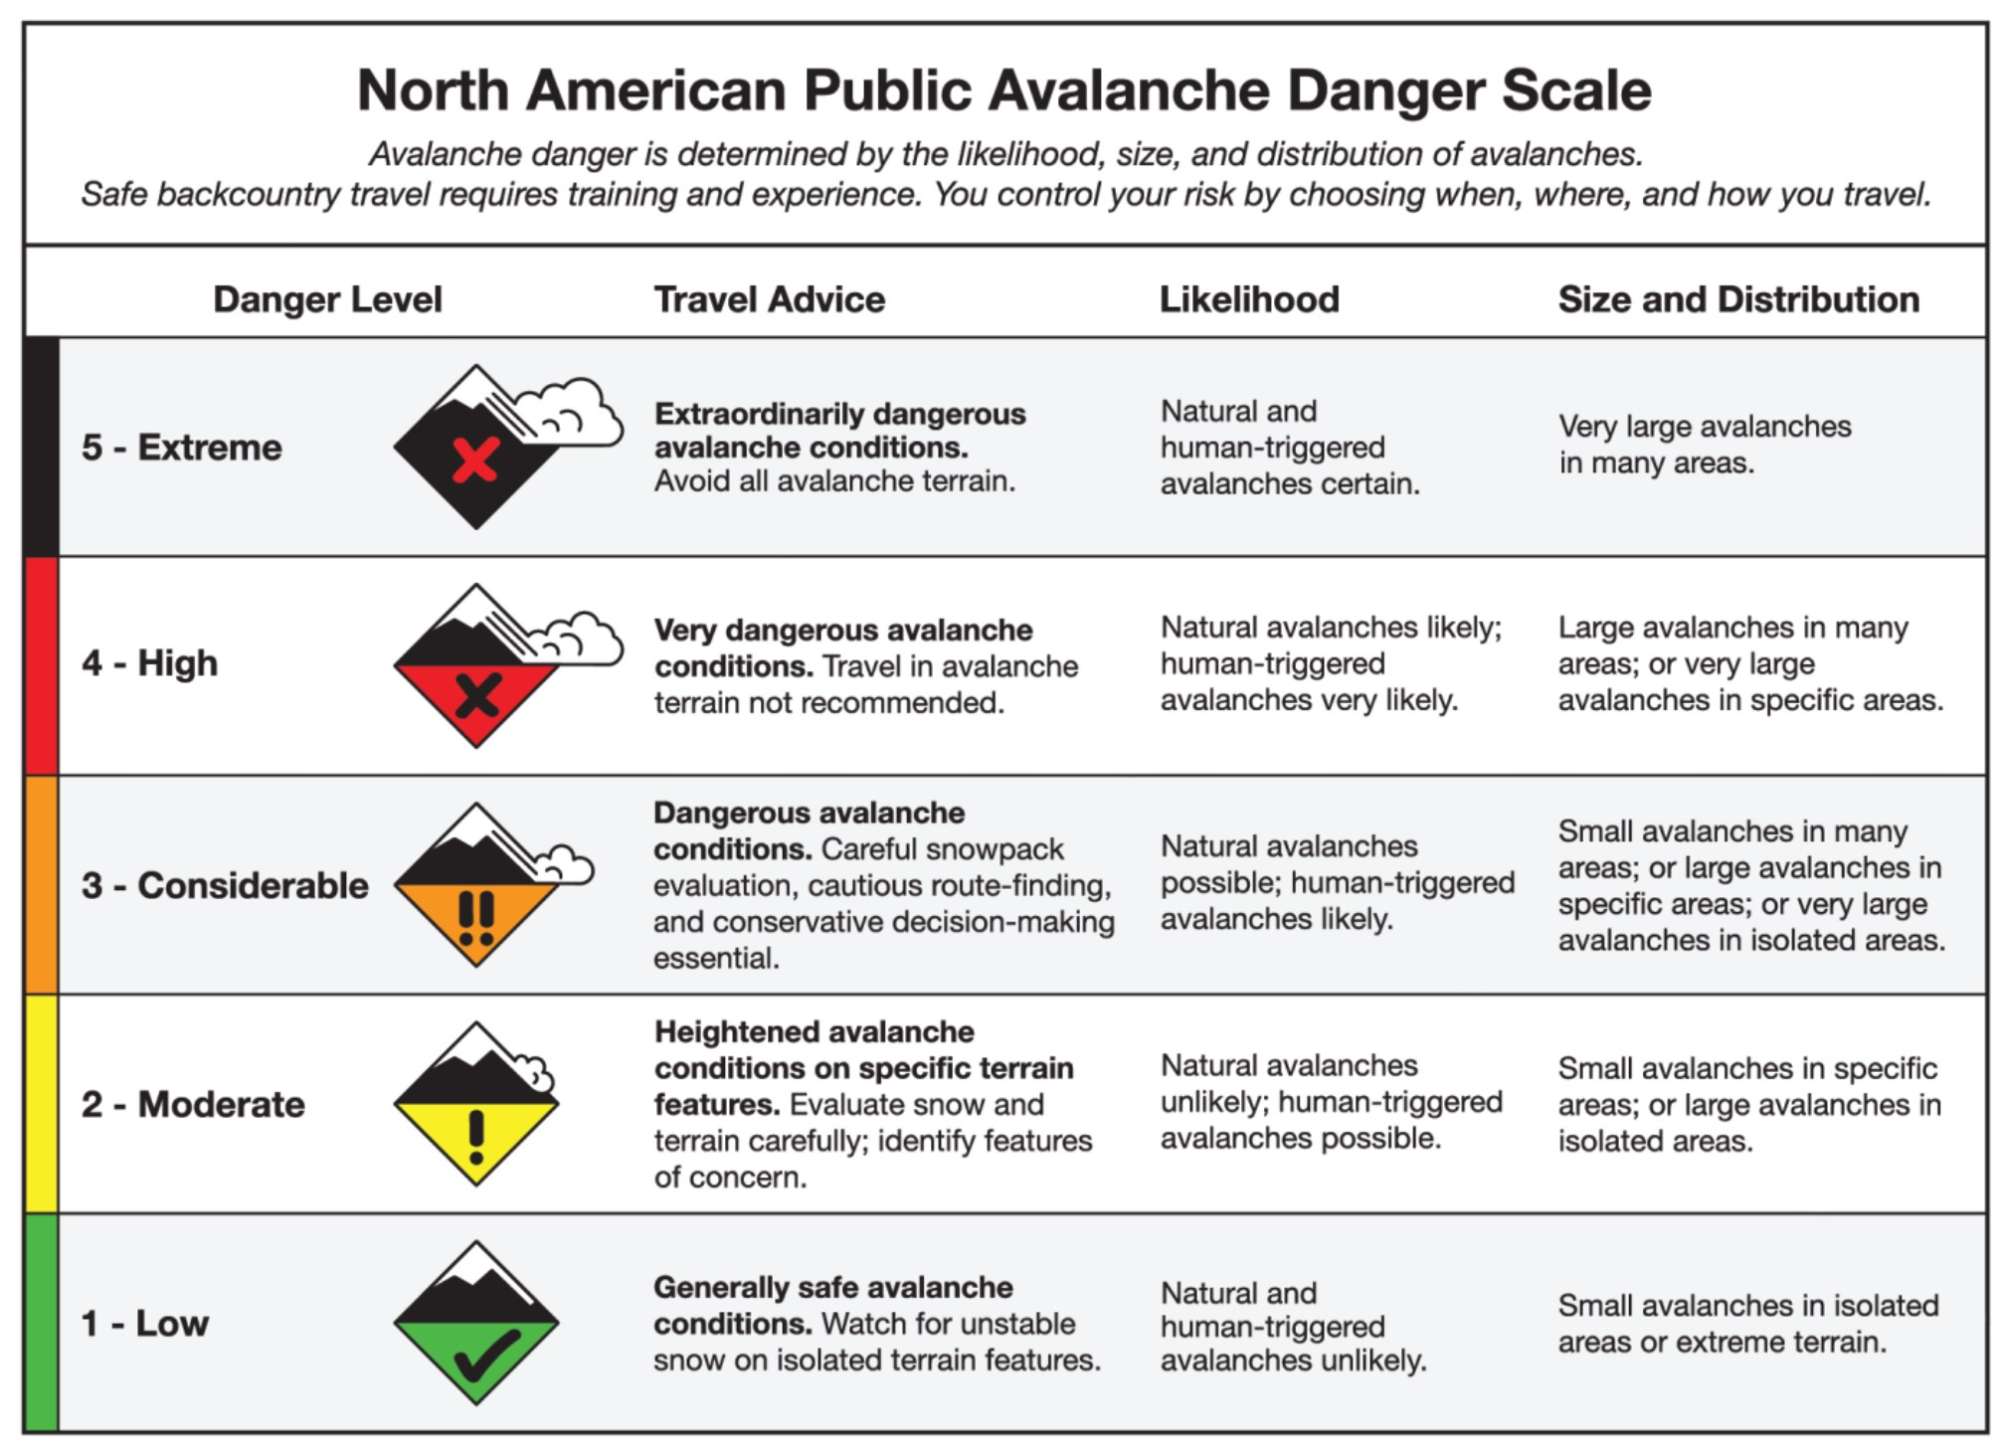 North American public avalanche danger scale